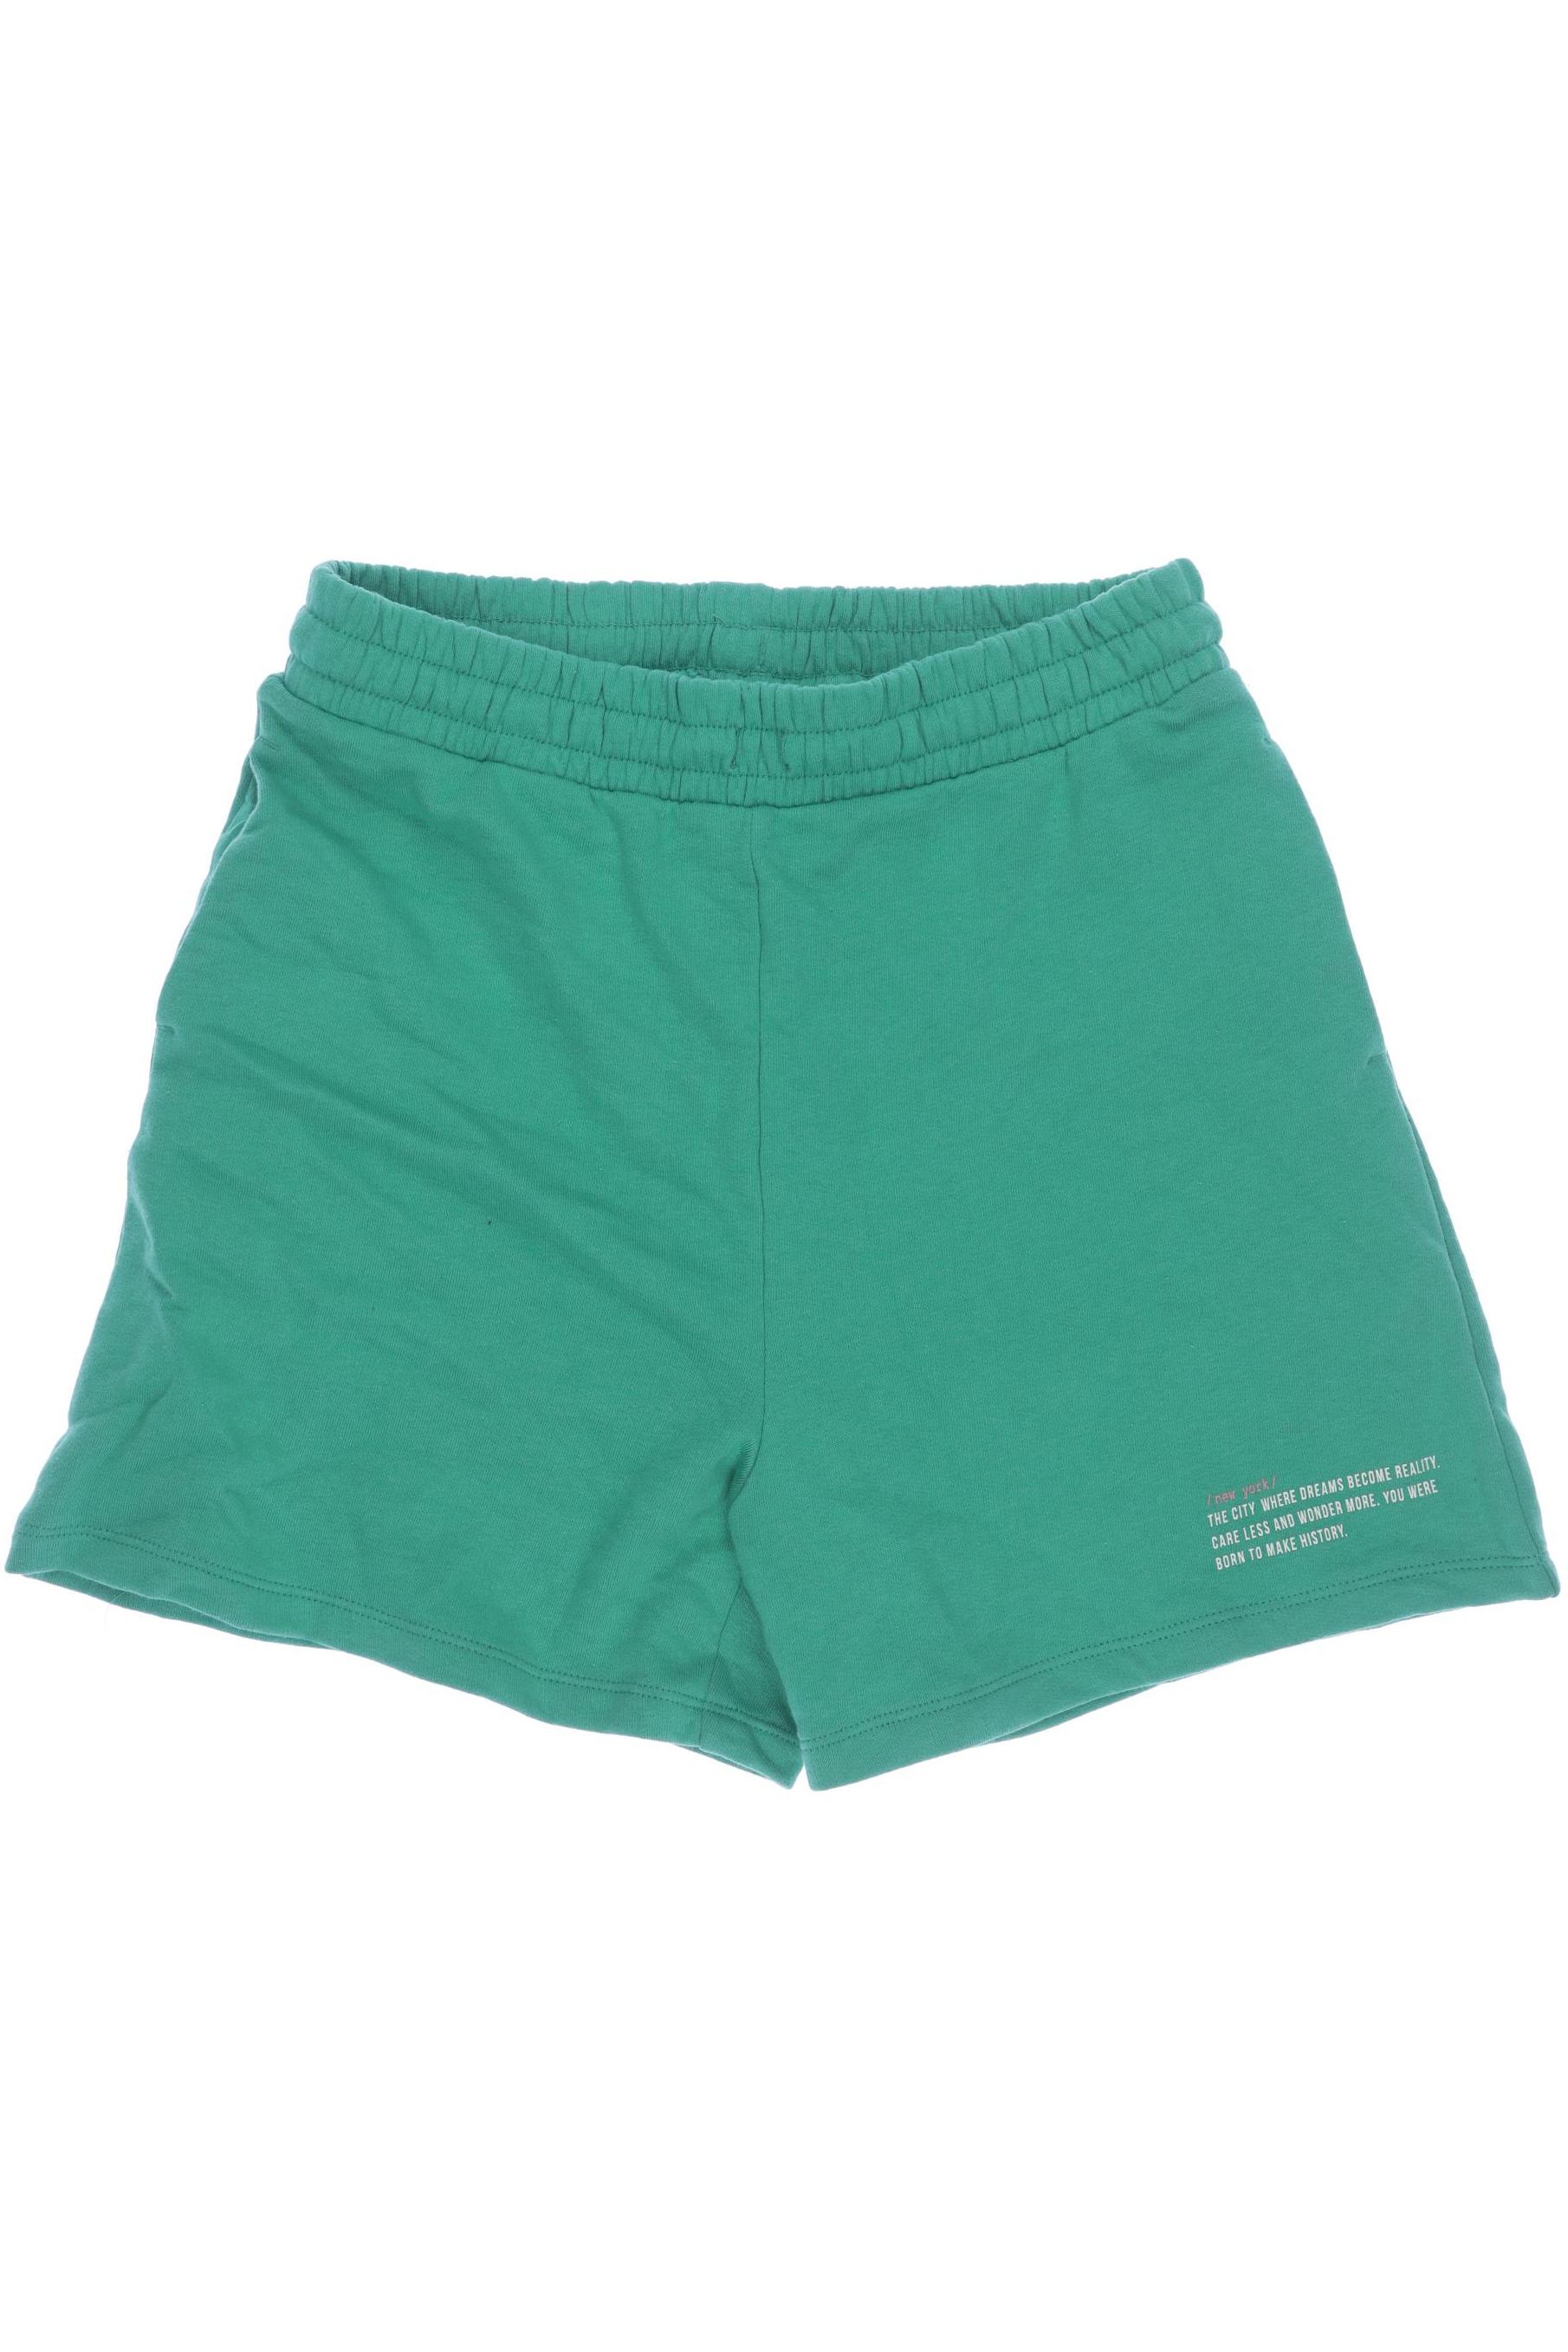 H&M Herren Shorts, grün, Gr. 158 von H&M